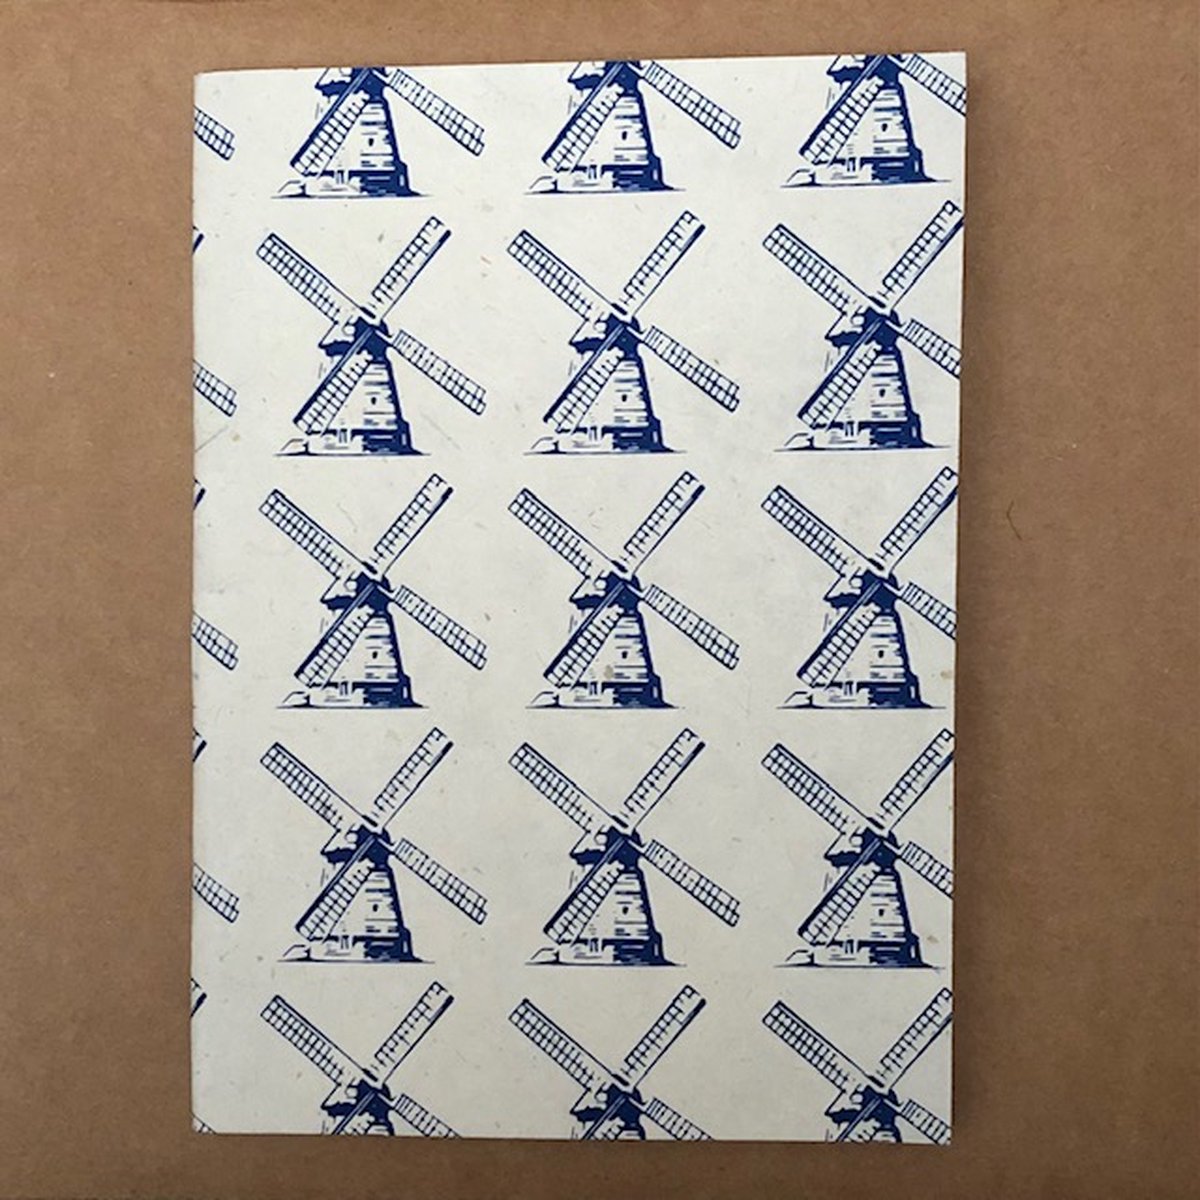 Luna-Leena duurzaam notitieboek A5 - molen print - Hollands blauw- soft cover - eco friendly paper - handmade in Nepal - notebook - souvenirs - Holland - Dutch mills